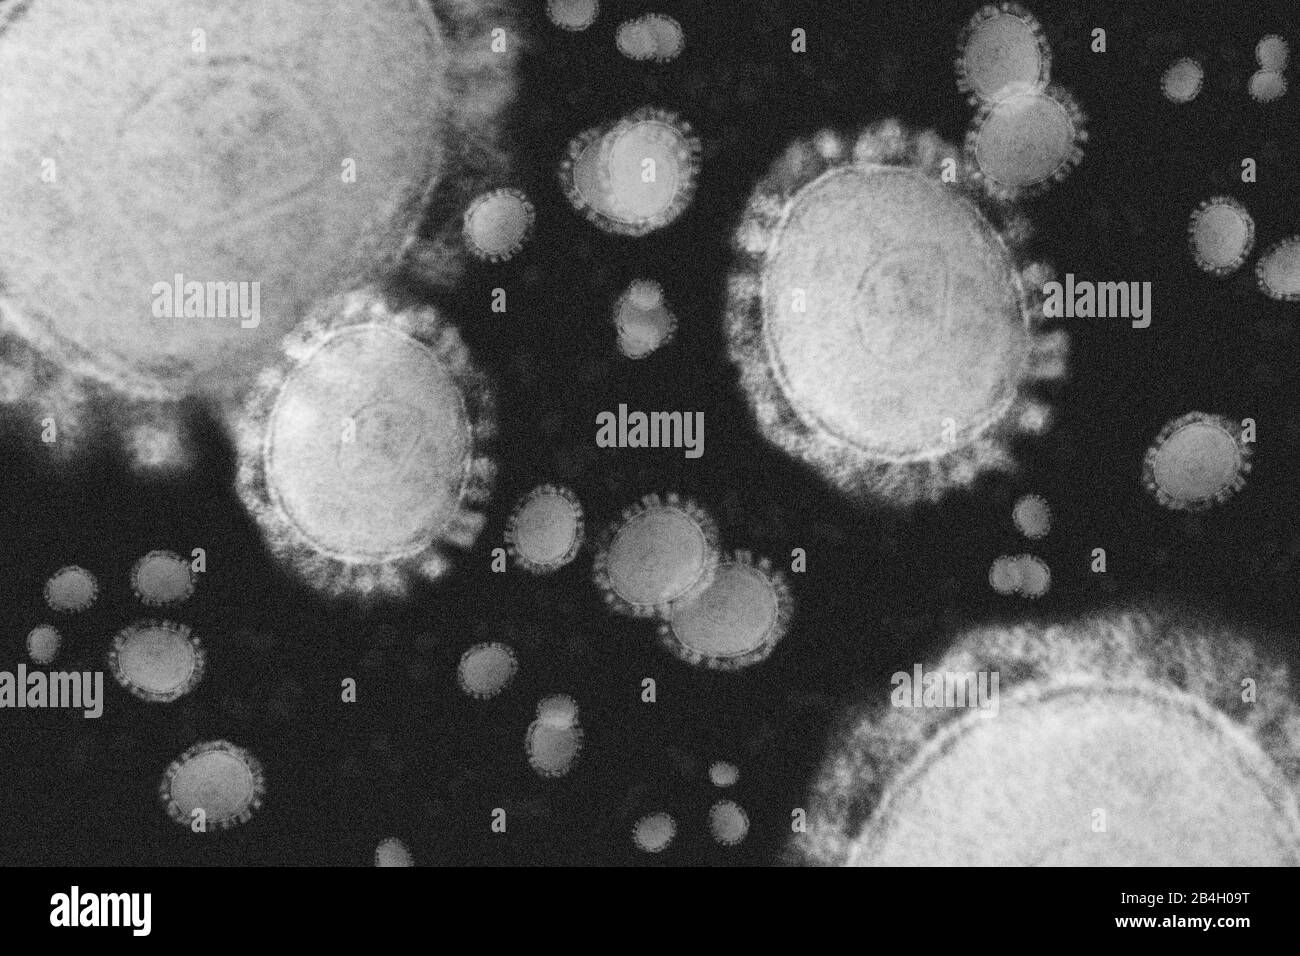 Eine Schwarz-Weiß-Abbildung des individuellen Coronavirus, das wächst und sich ausbreitet. Stockfoto